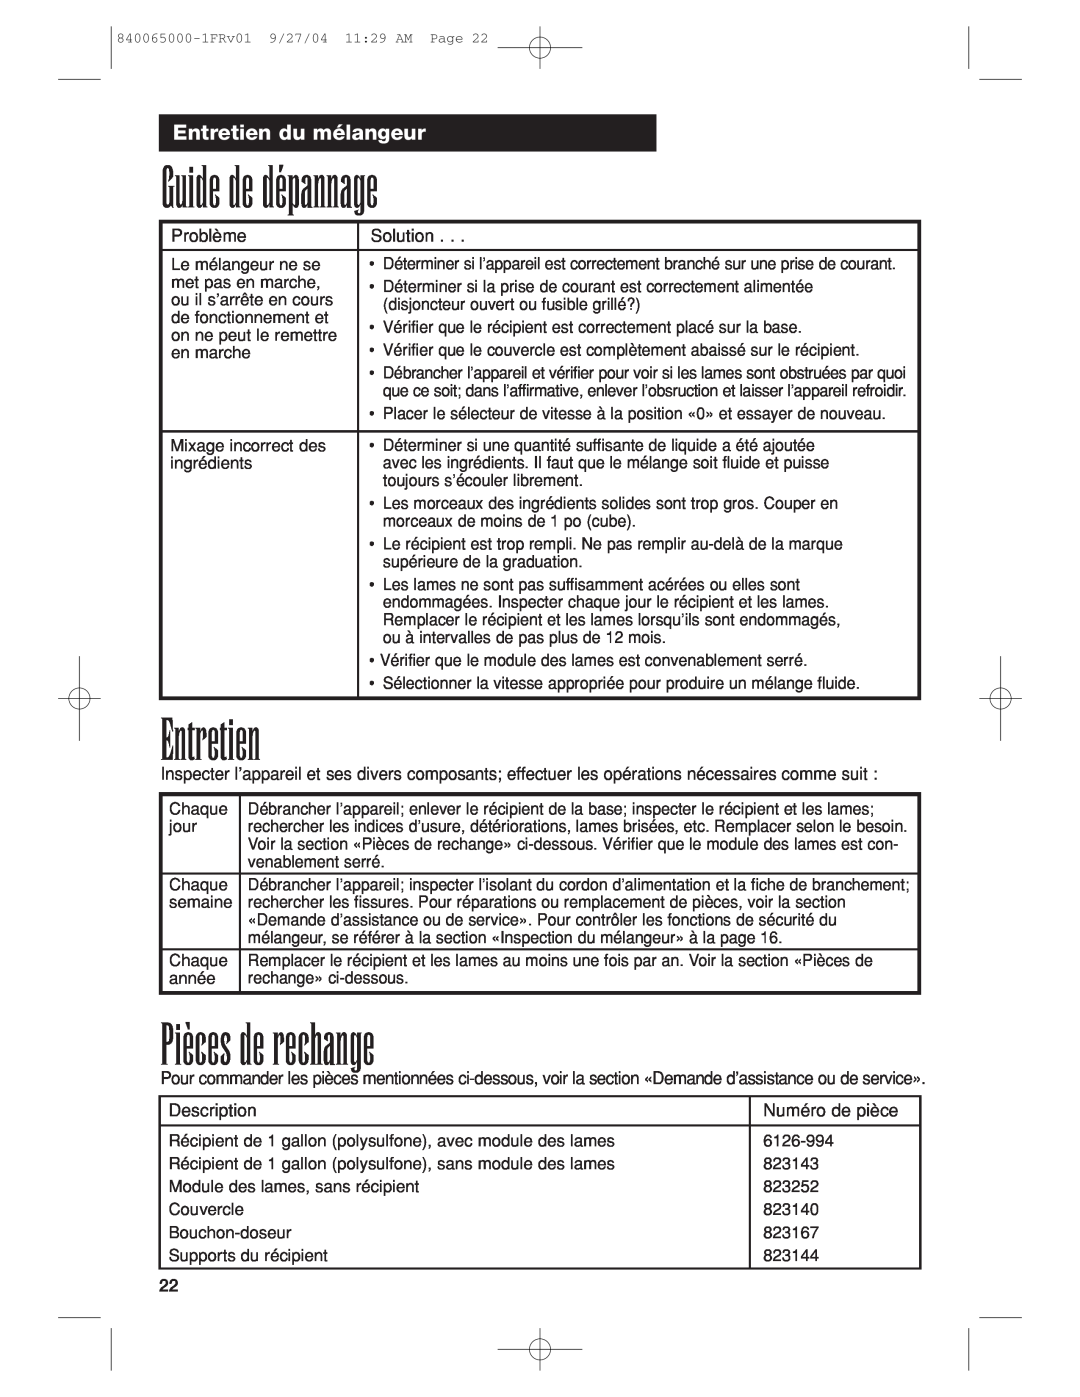 Proctor-Silex 994 operation manual Guide de dépannage, Pièces de rechange, Entretien du mélangeur 